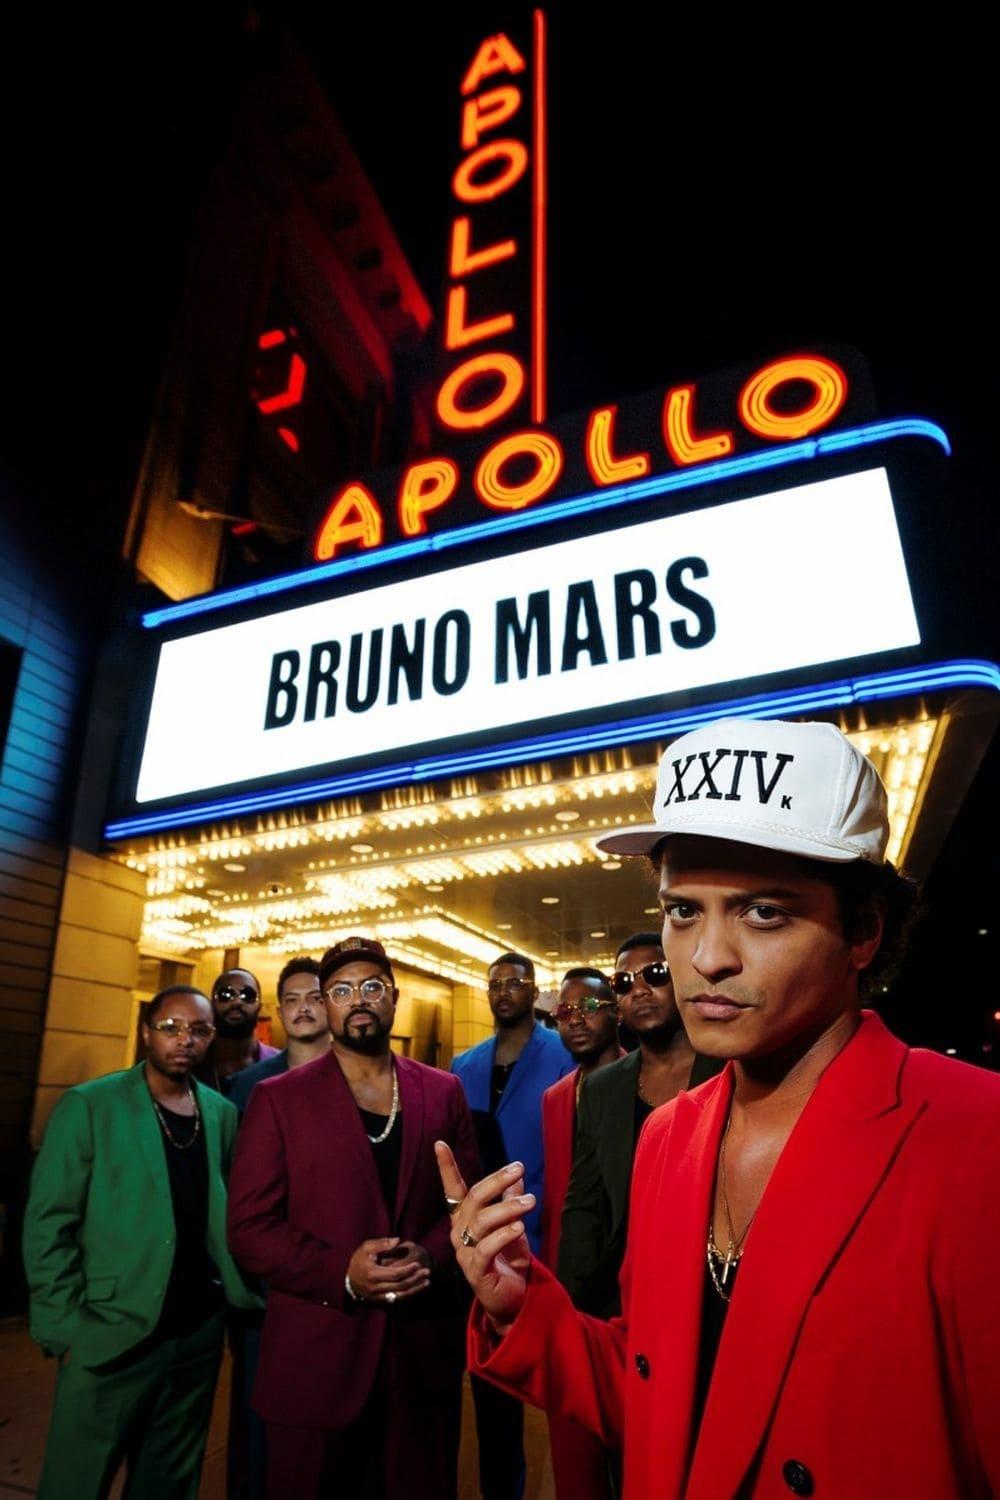 Bruno Mars: 24K Magic Live at the Apollo poster